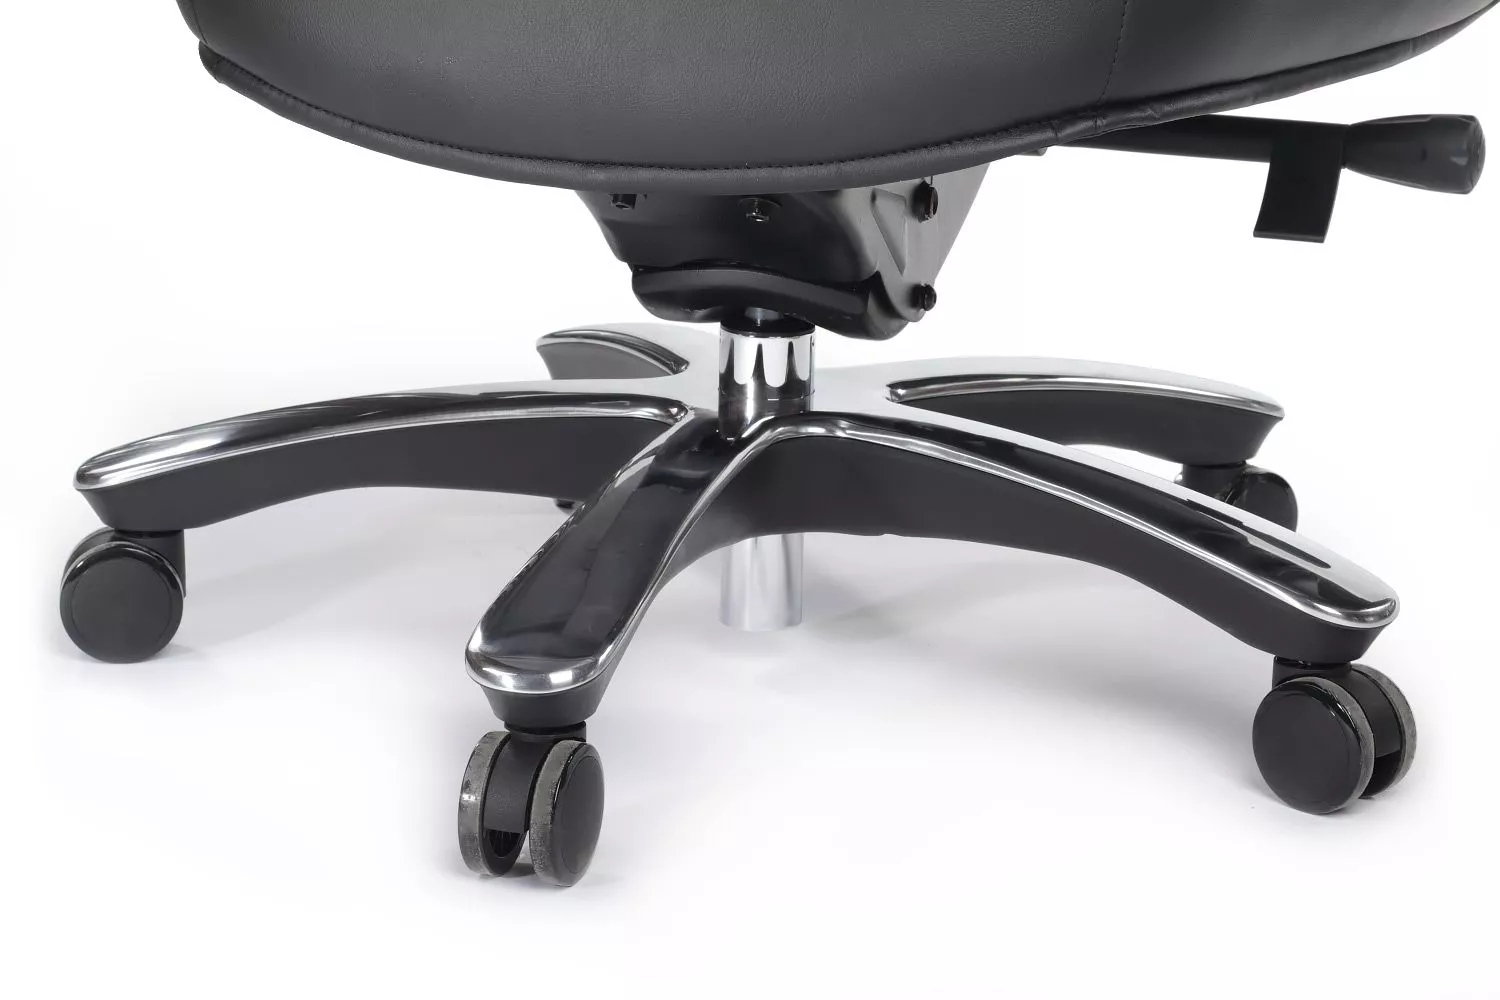 Офисное кресло из натуральной кожи RIVA DESIGN Batisto (A2018) черный